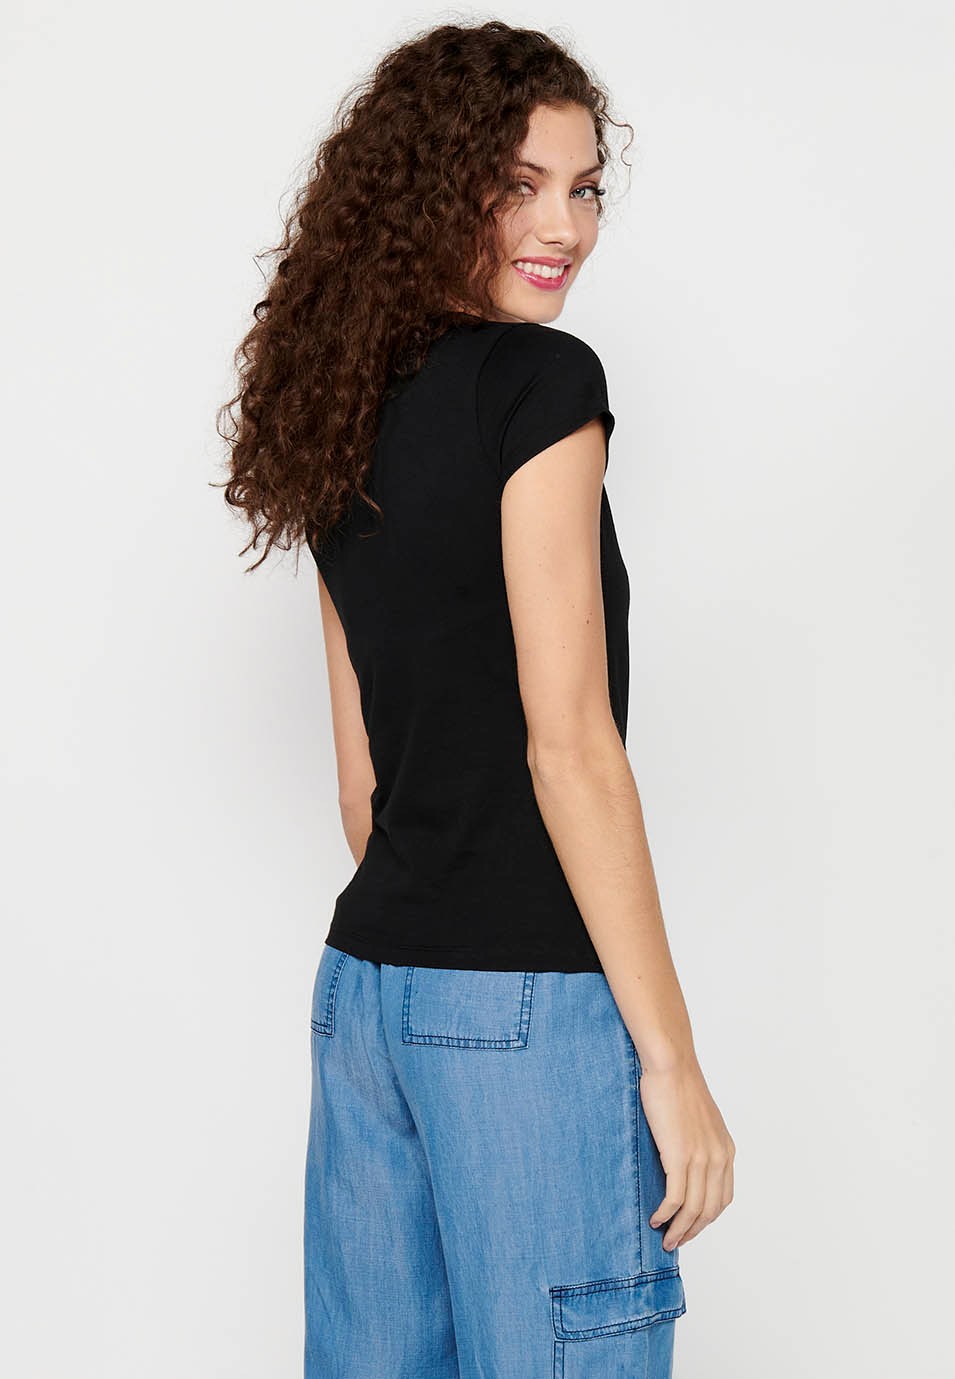 Women's Black Color Front Print Round Neck Cotton Short Sleeve T-shirt 2